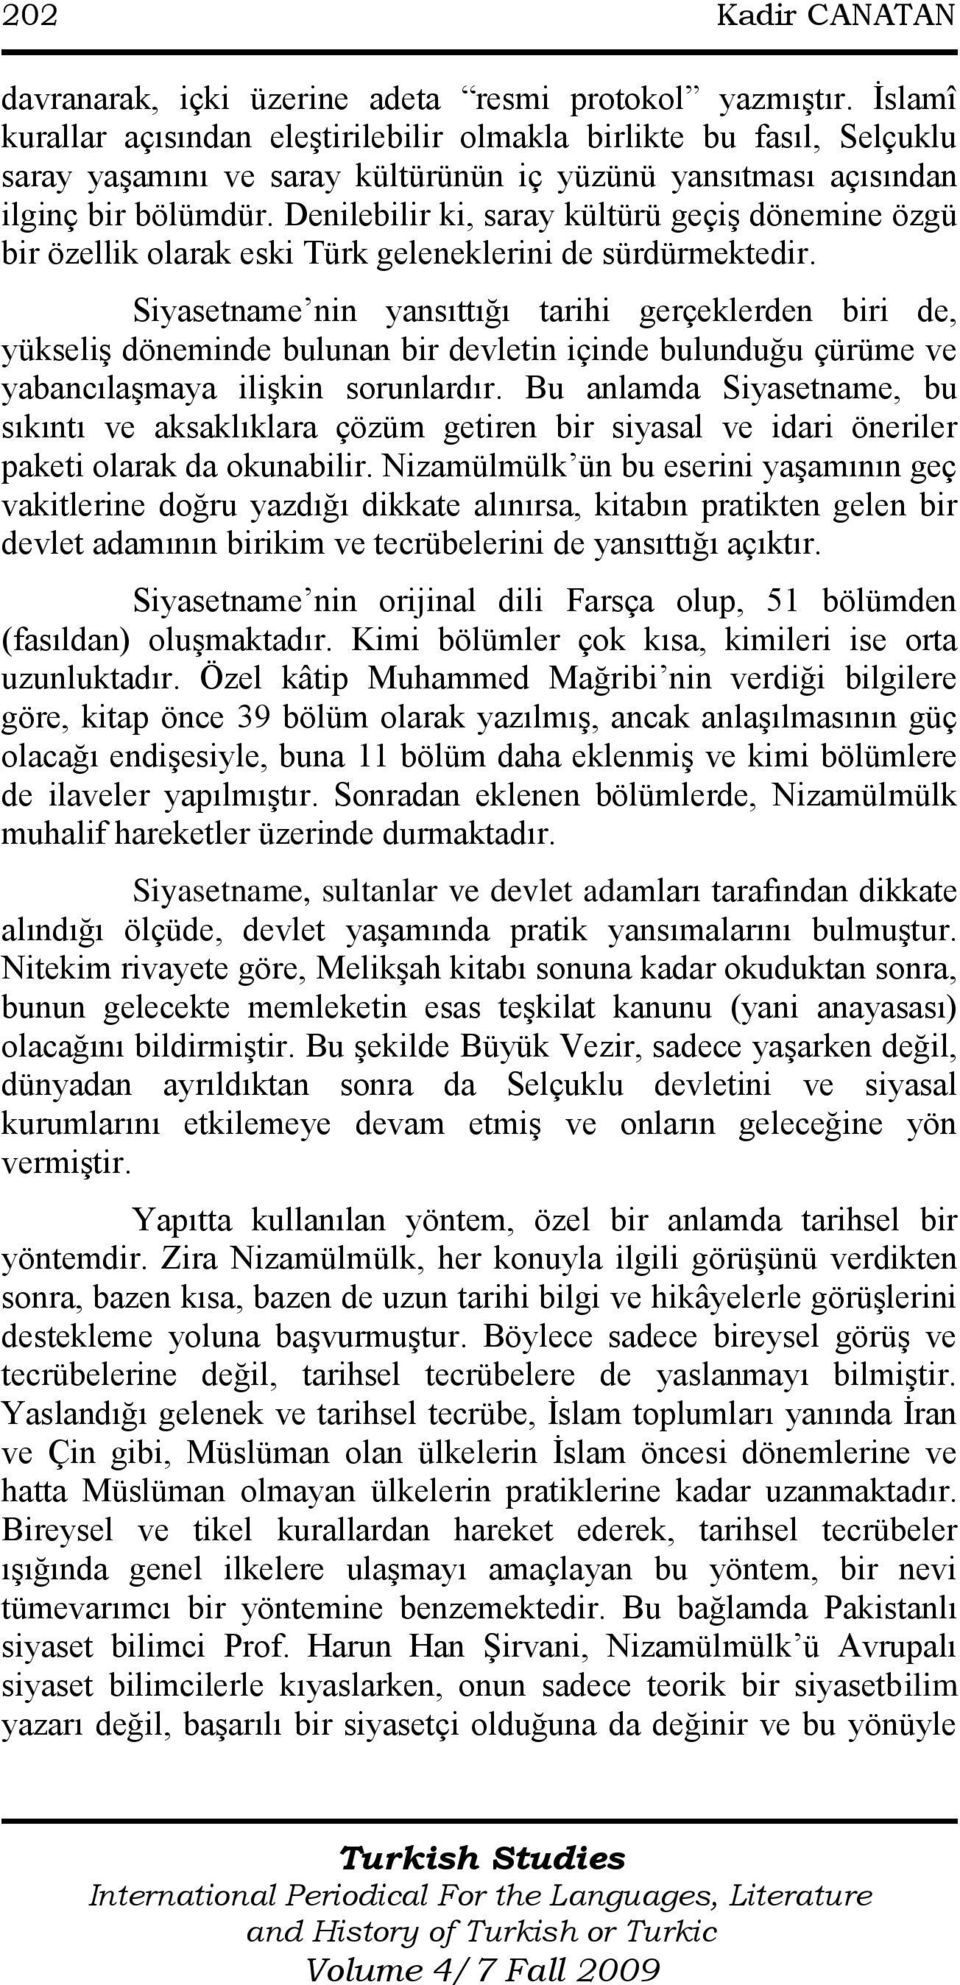 Denilebilir ki, saray kültürü geçiģ dönemine özgü bir özellik olarak eski Türk geleneklerini de sürdürmektedir.